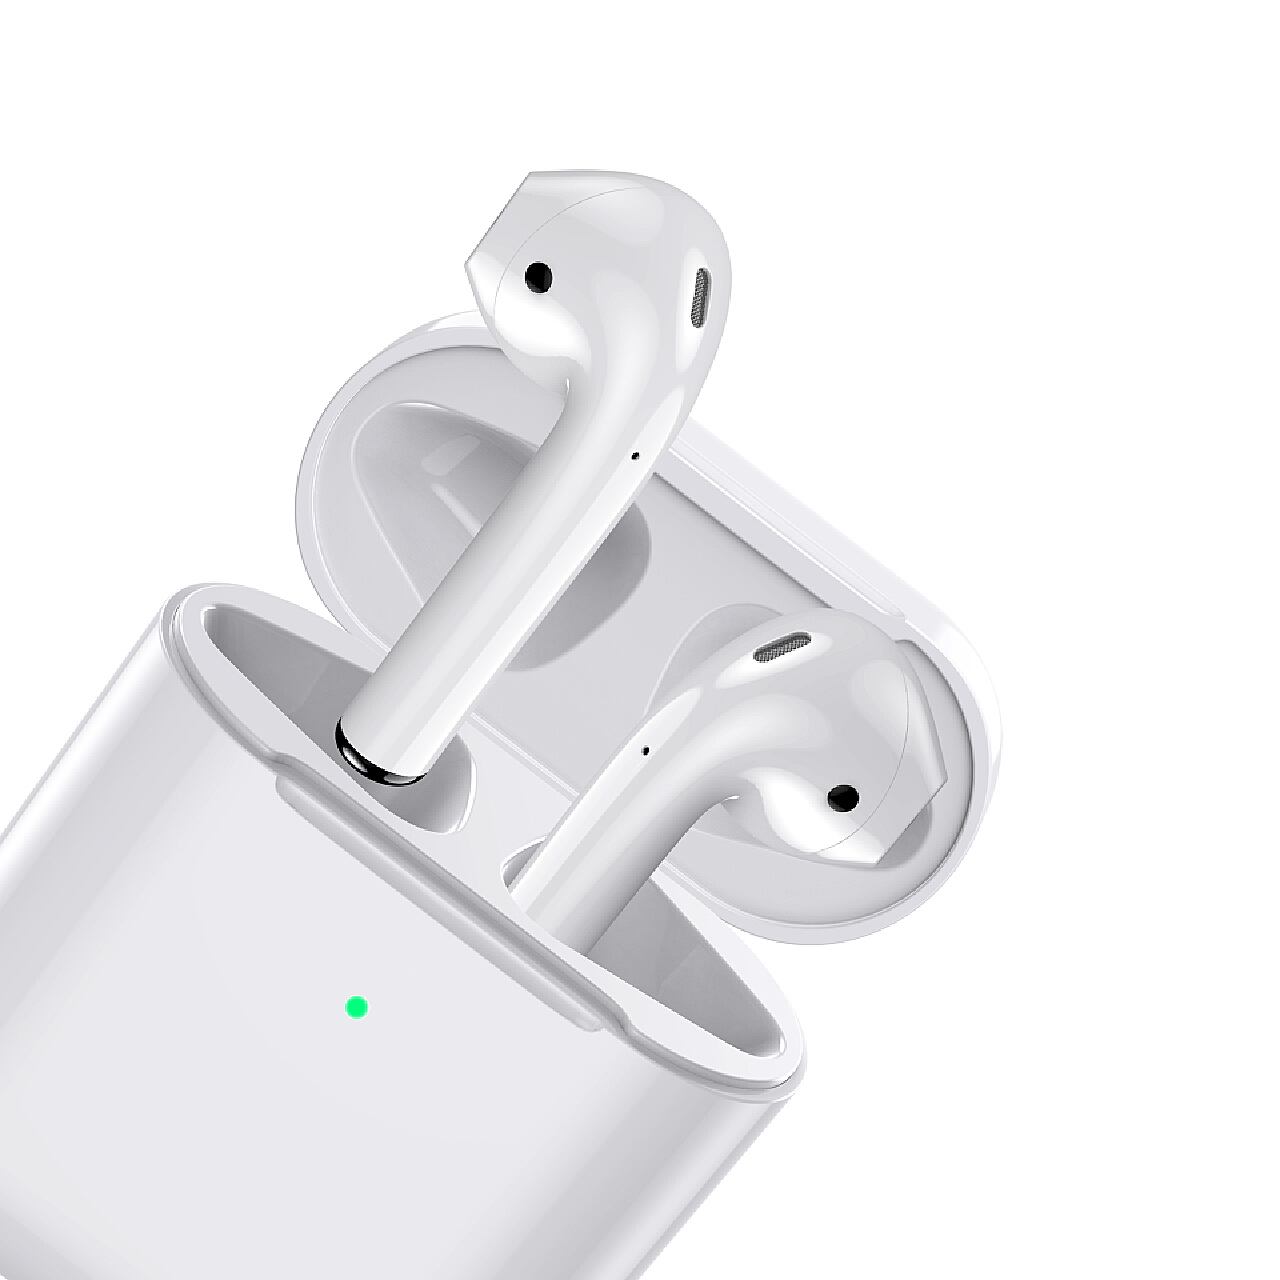 Soomal作品 - Apple 苹果 Airpods 蓝牙无线耳机 图集[Soomal]